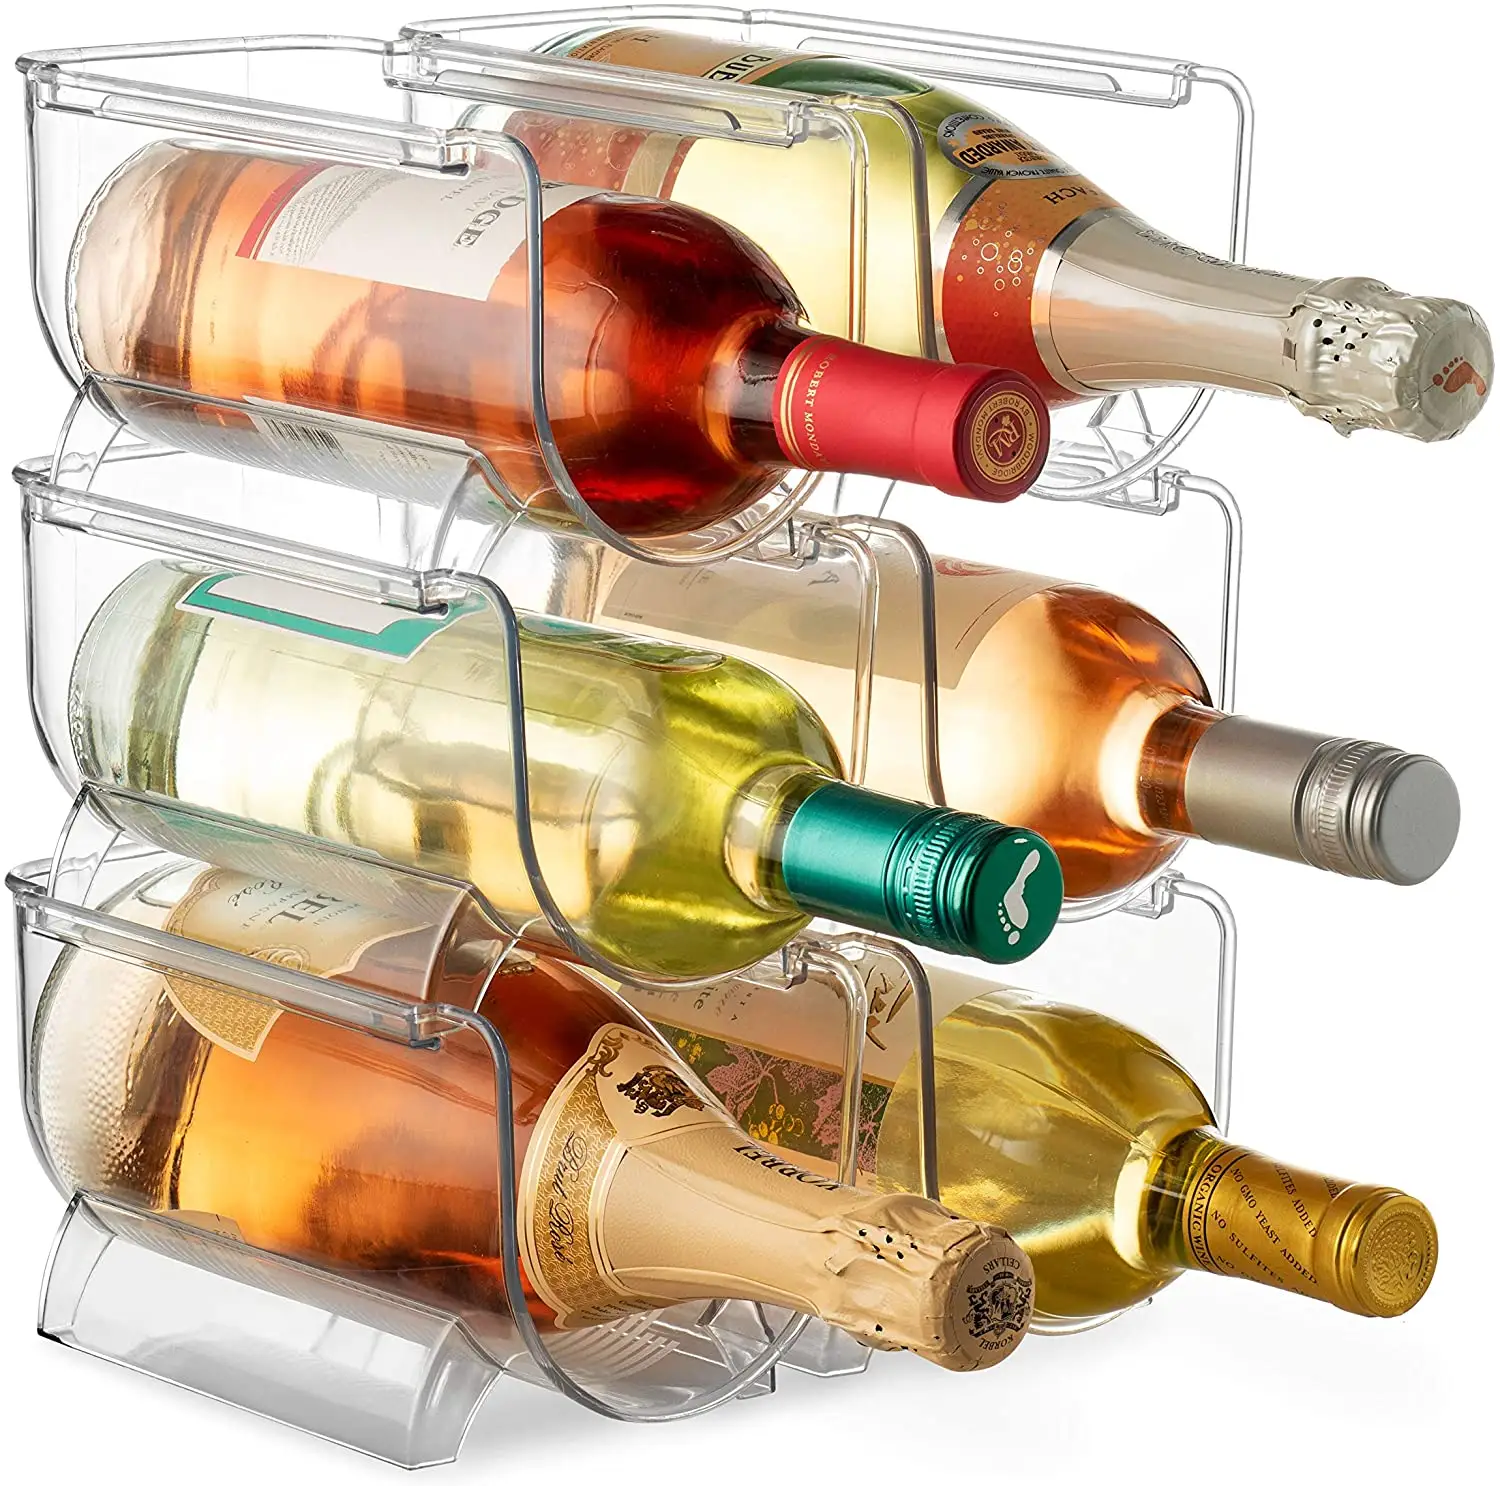 حار بيع تكويم النبيذ و المياه زجاجة المنظم البلاستيك حامل لرف النبيذ ل الثلاجة